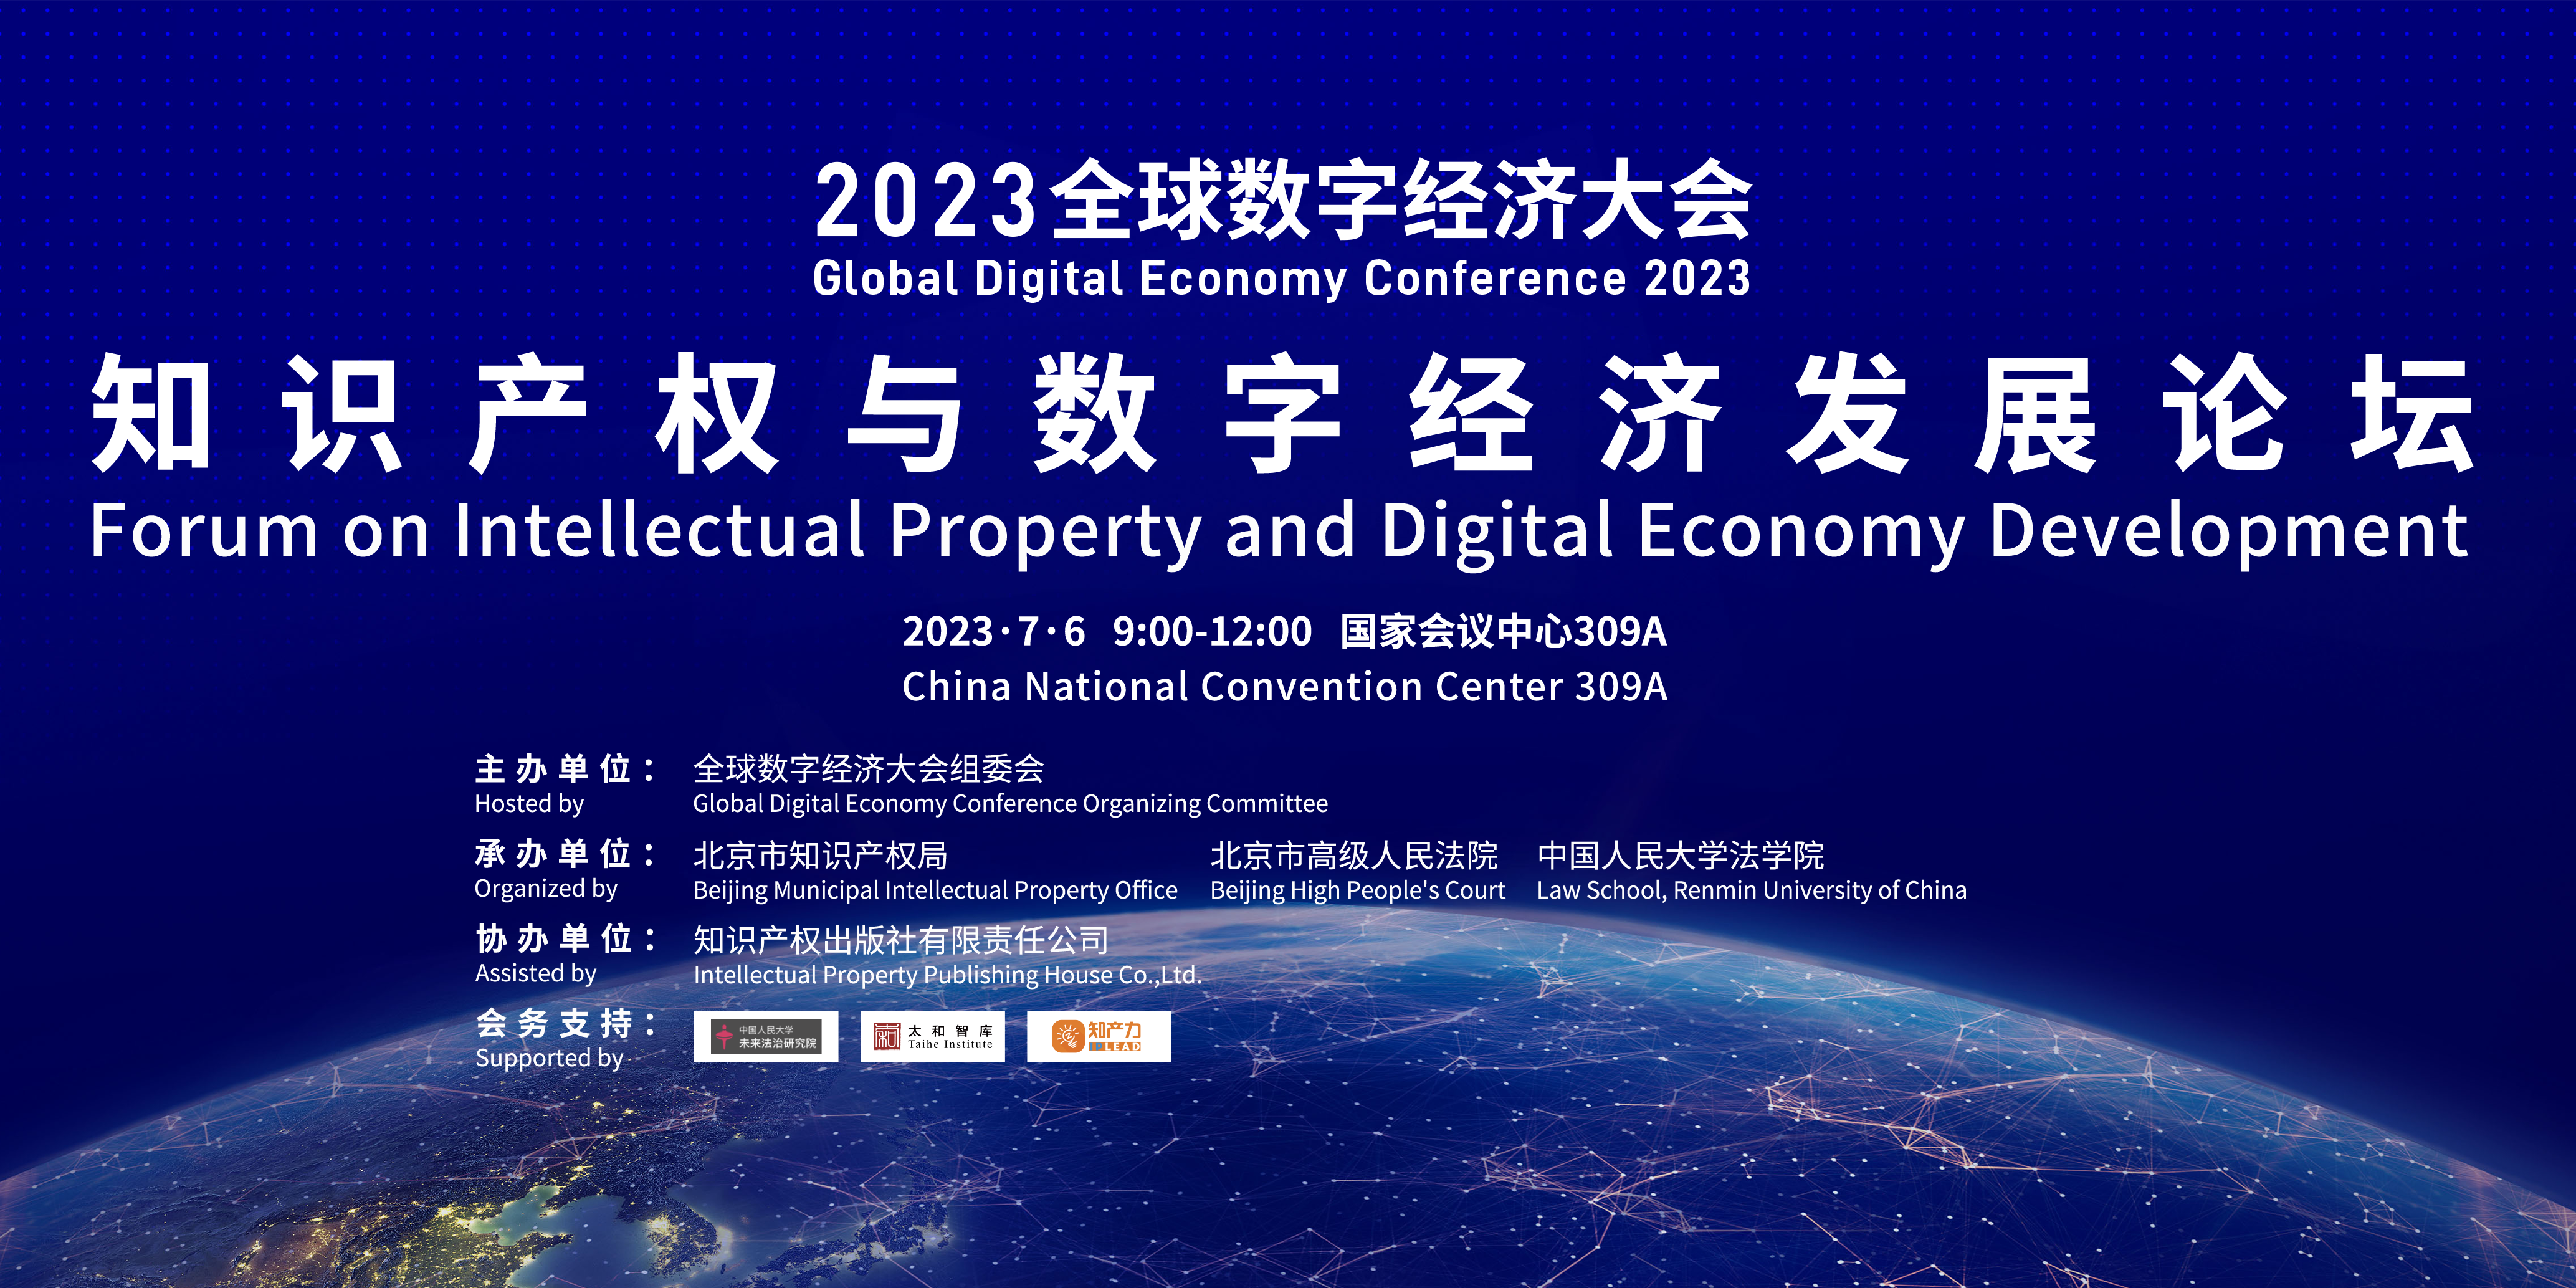 2023全球数字经济大会“知识产权与数字经济发展”专题论坛